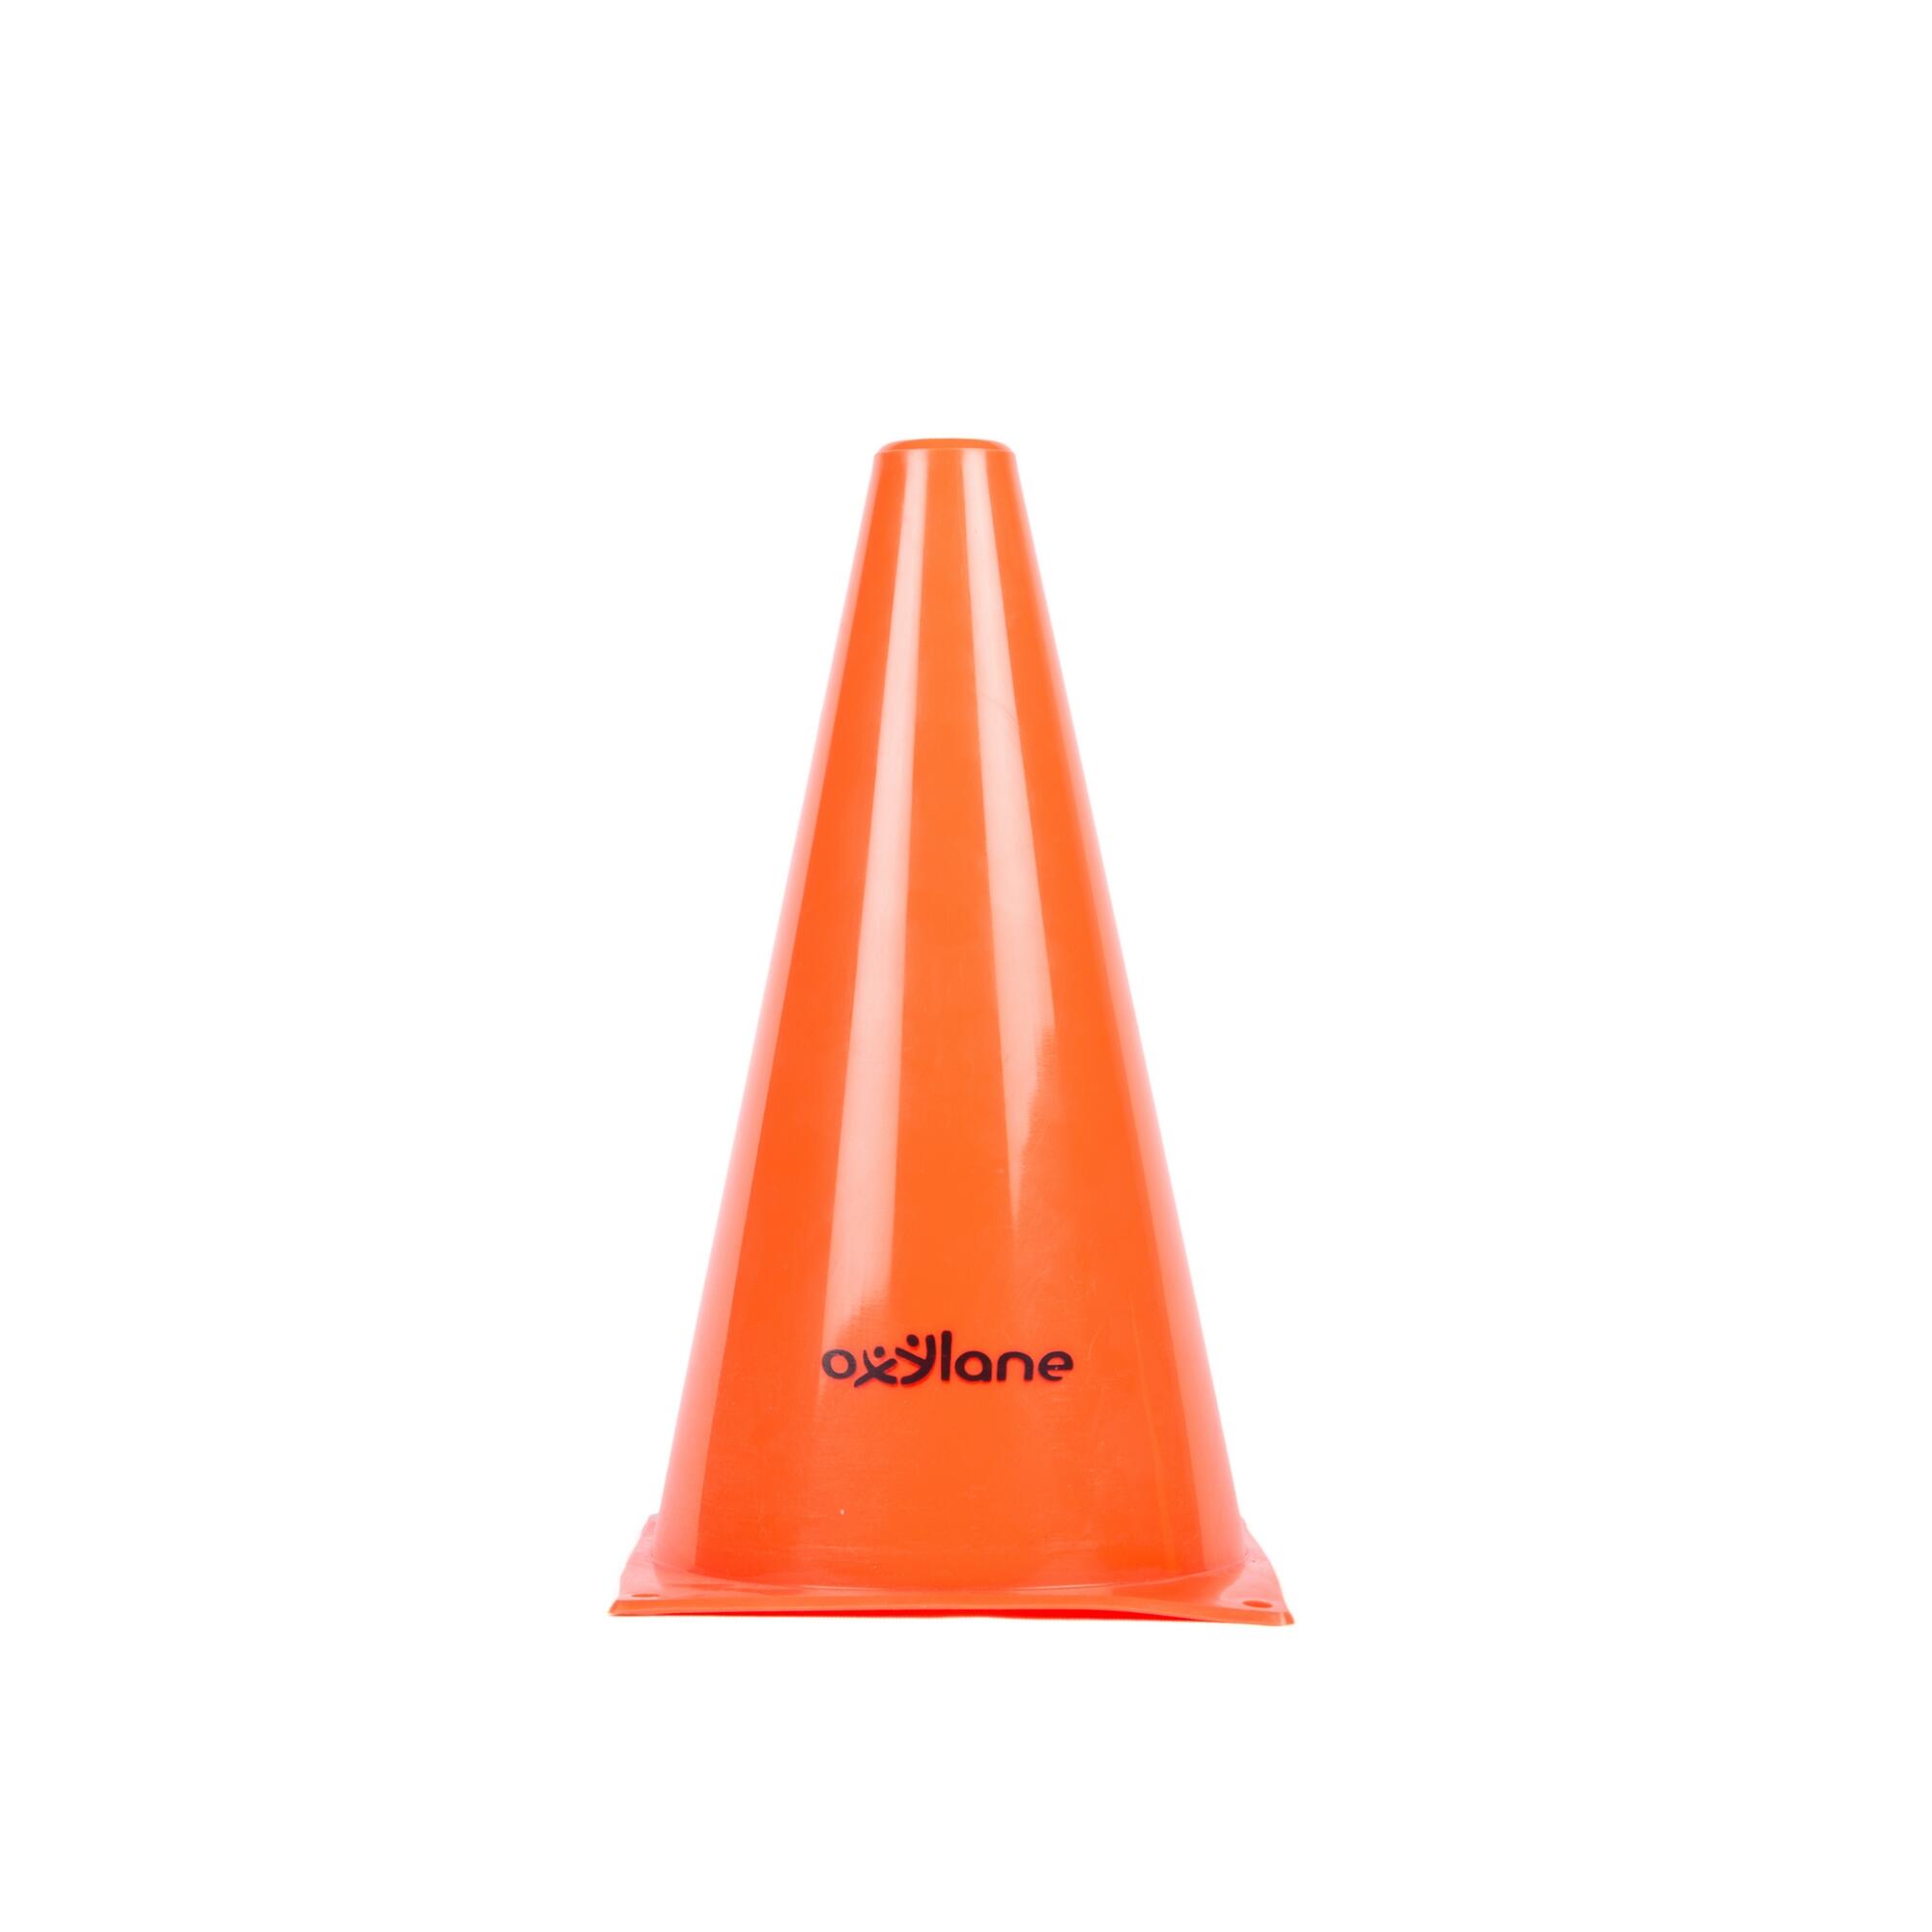 decathlon football cones